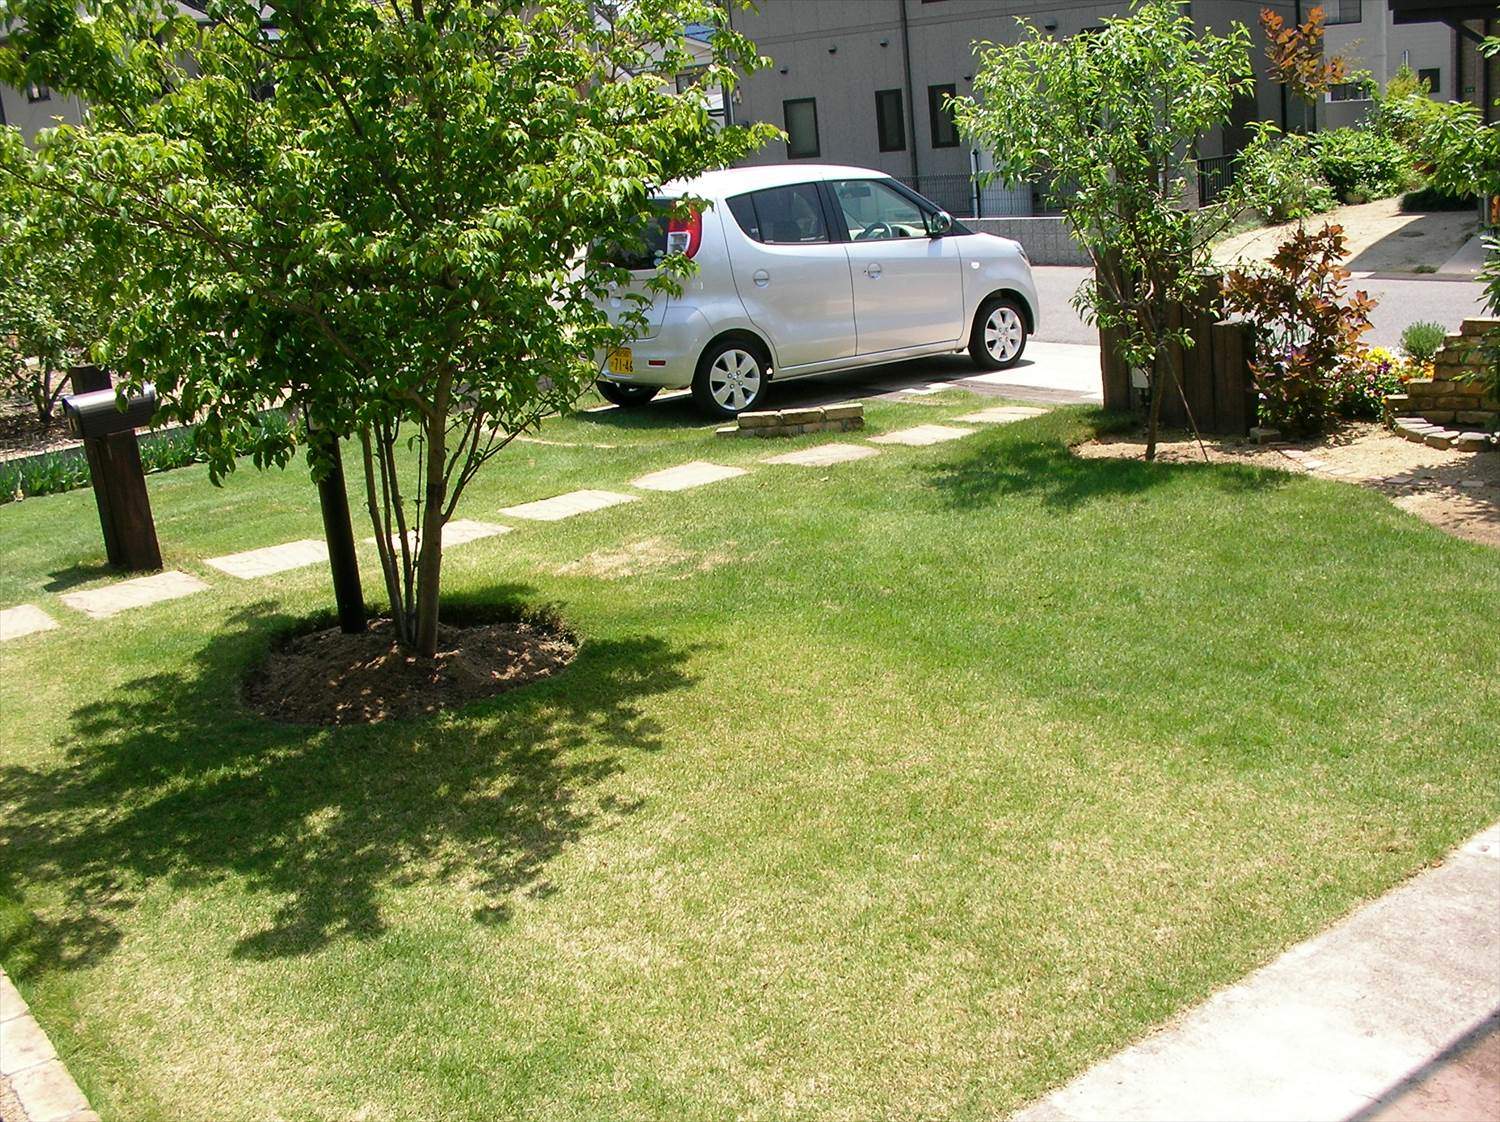 芝生の肥料選び方や効果 まき方 注意点を徹底解説 芝生のお手入れとガーデニング